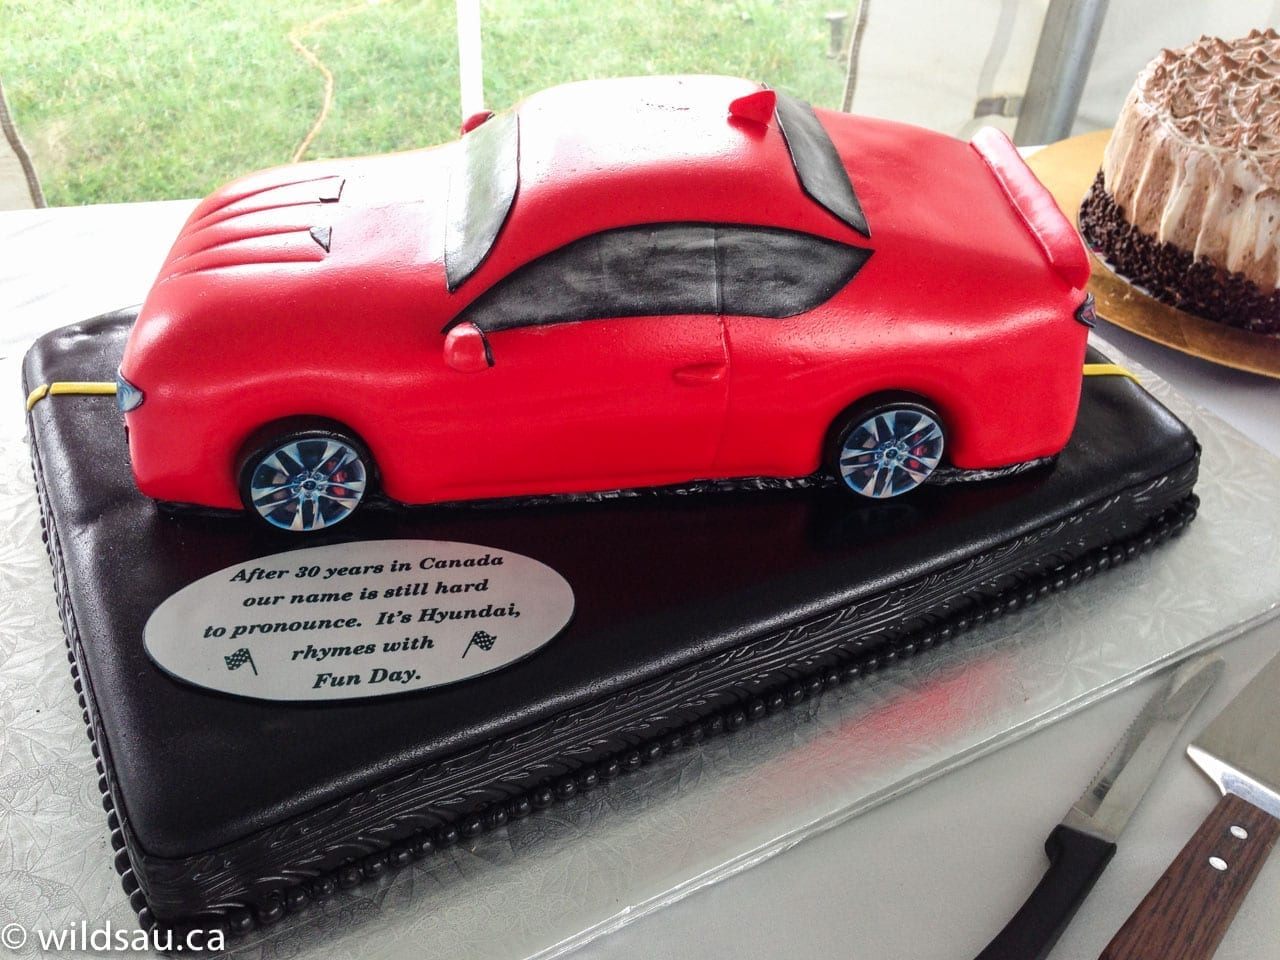 Genesis Coupe cake